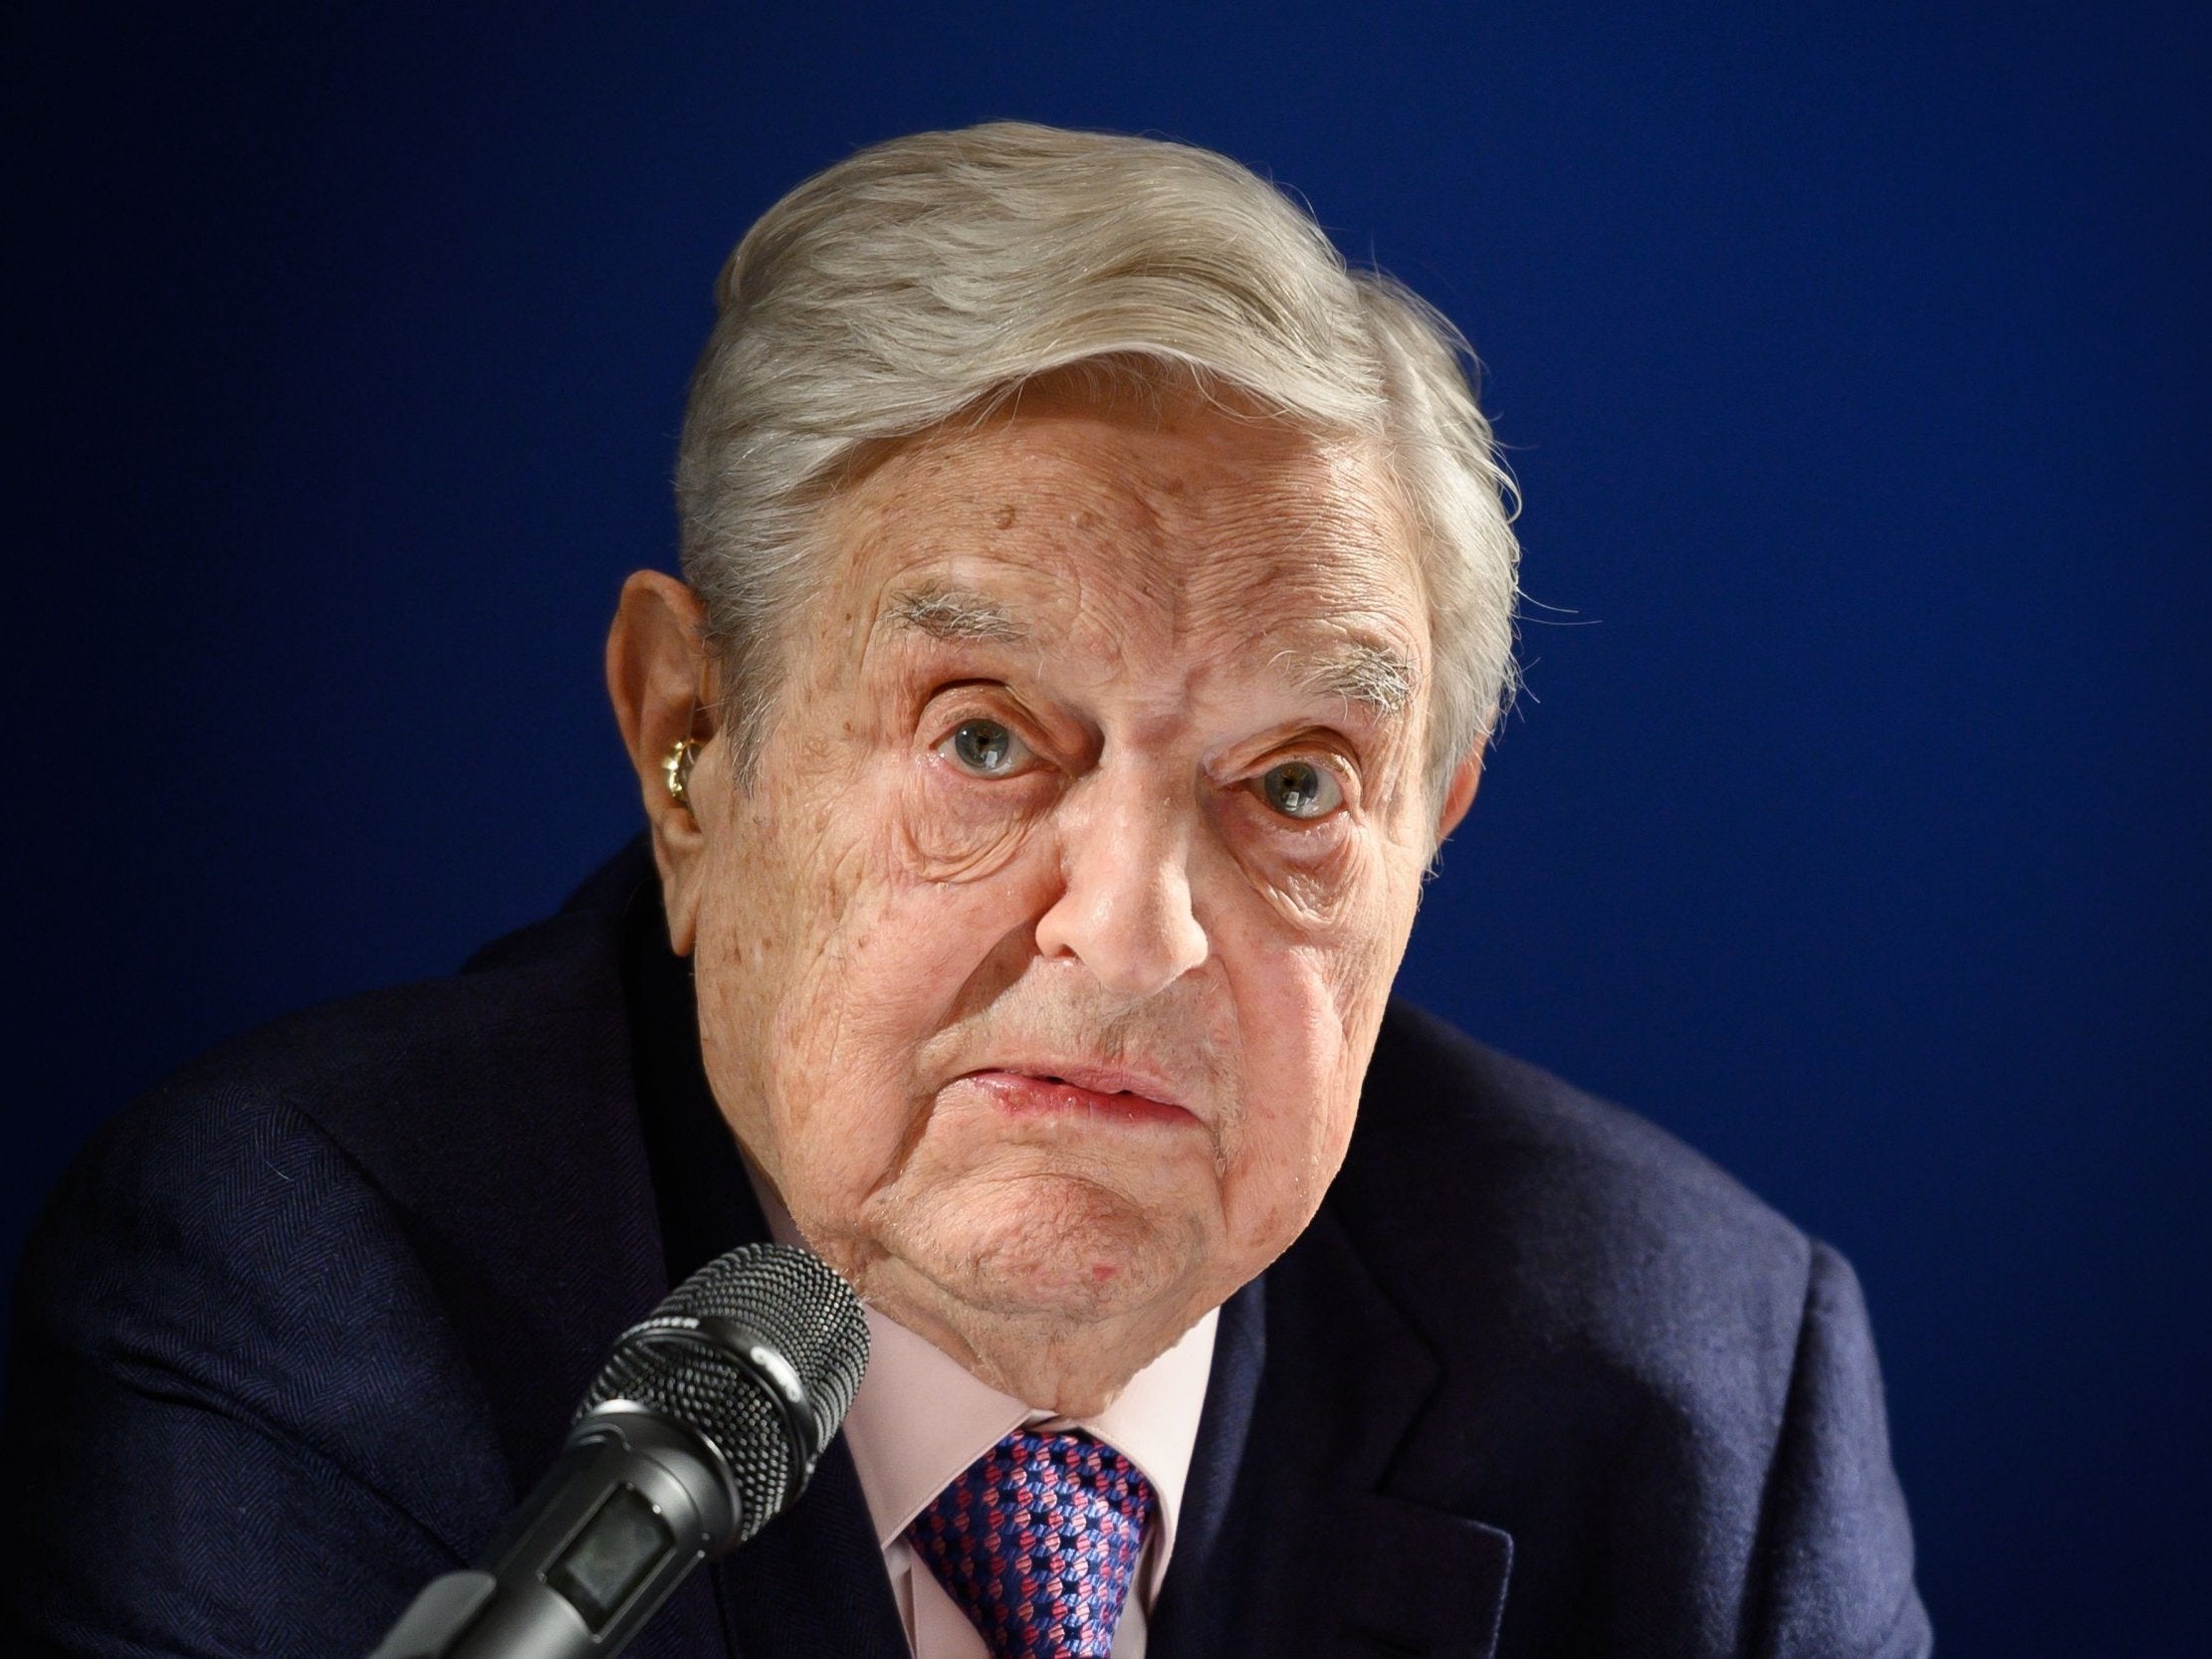 George Soros called for the "sleeping pro-European majority" to awaken